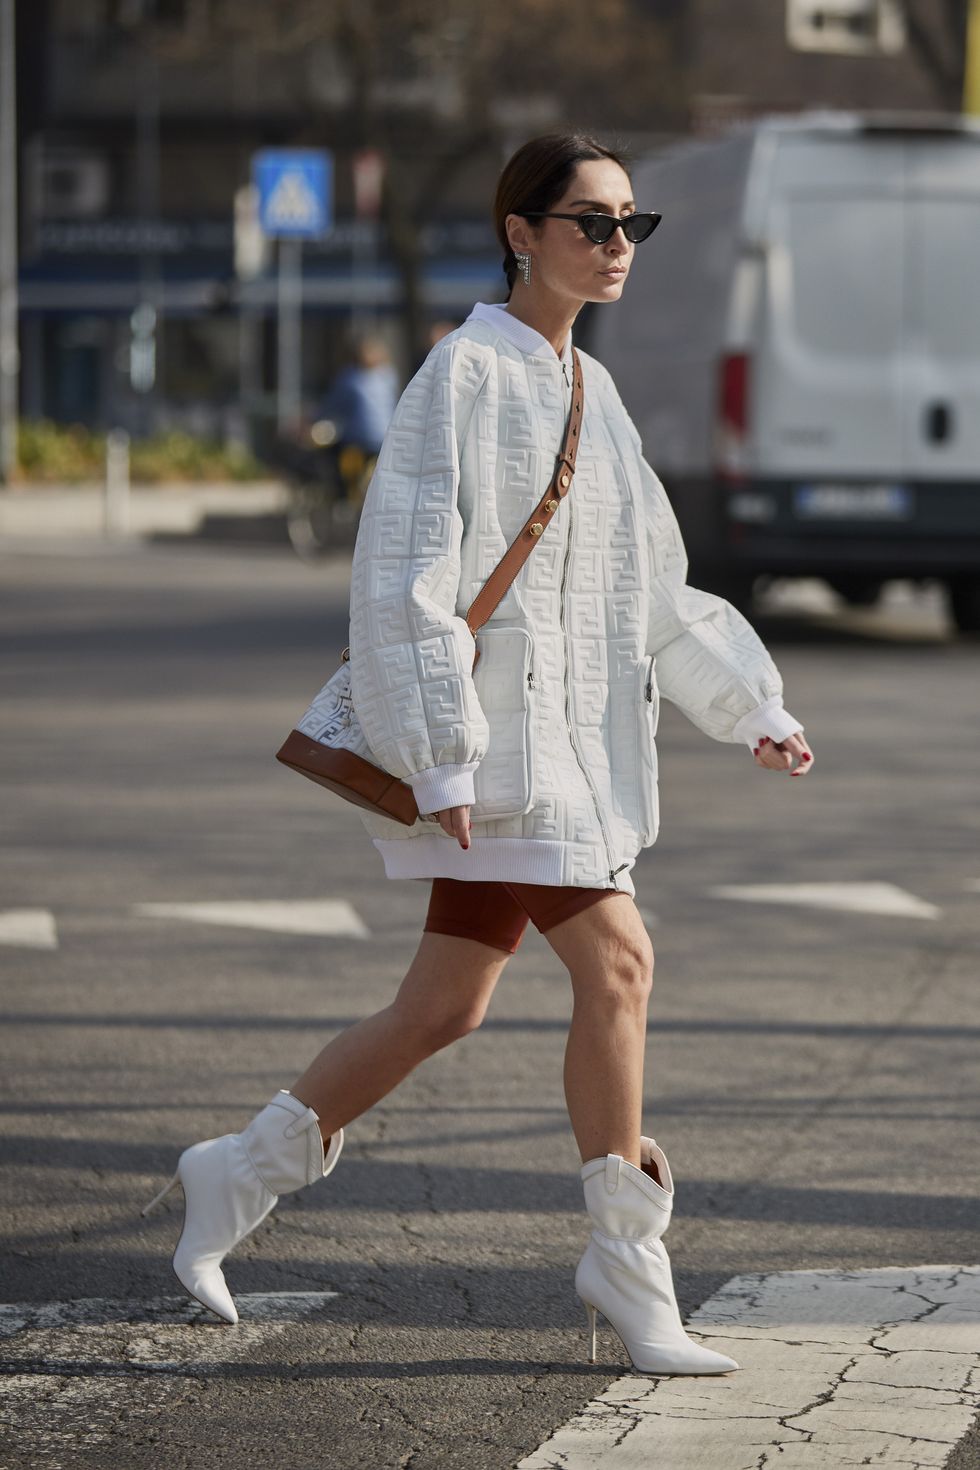 Mulher usando um look com bota branca composto por uma blusa branca oversized e shorts tipo academia